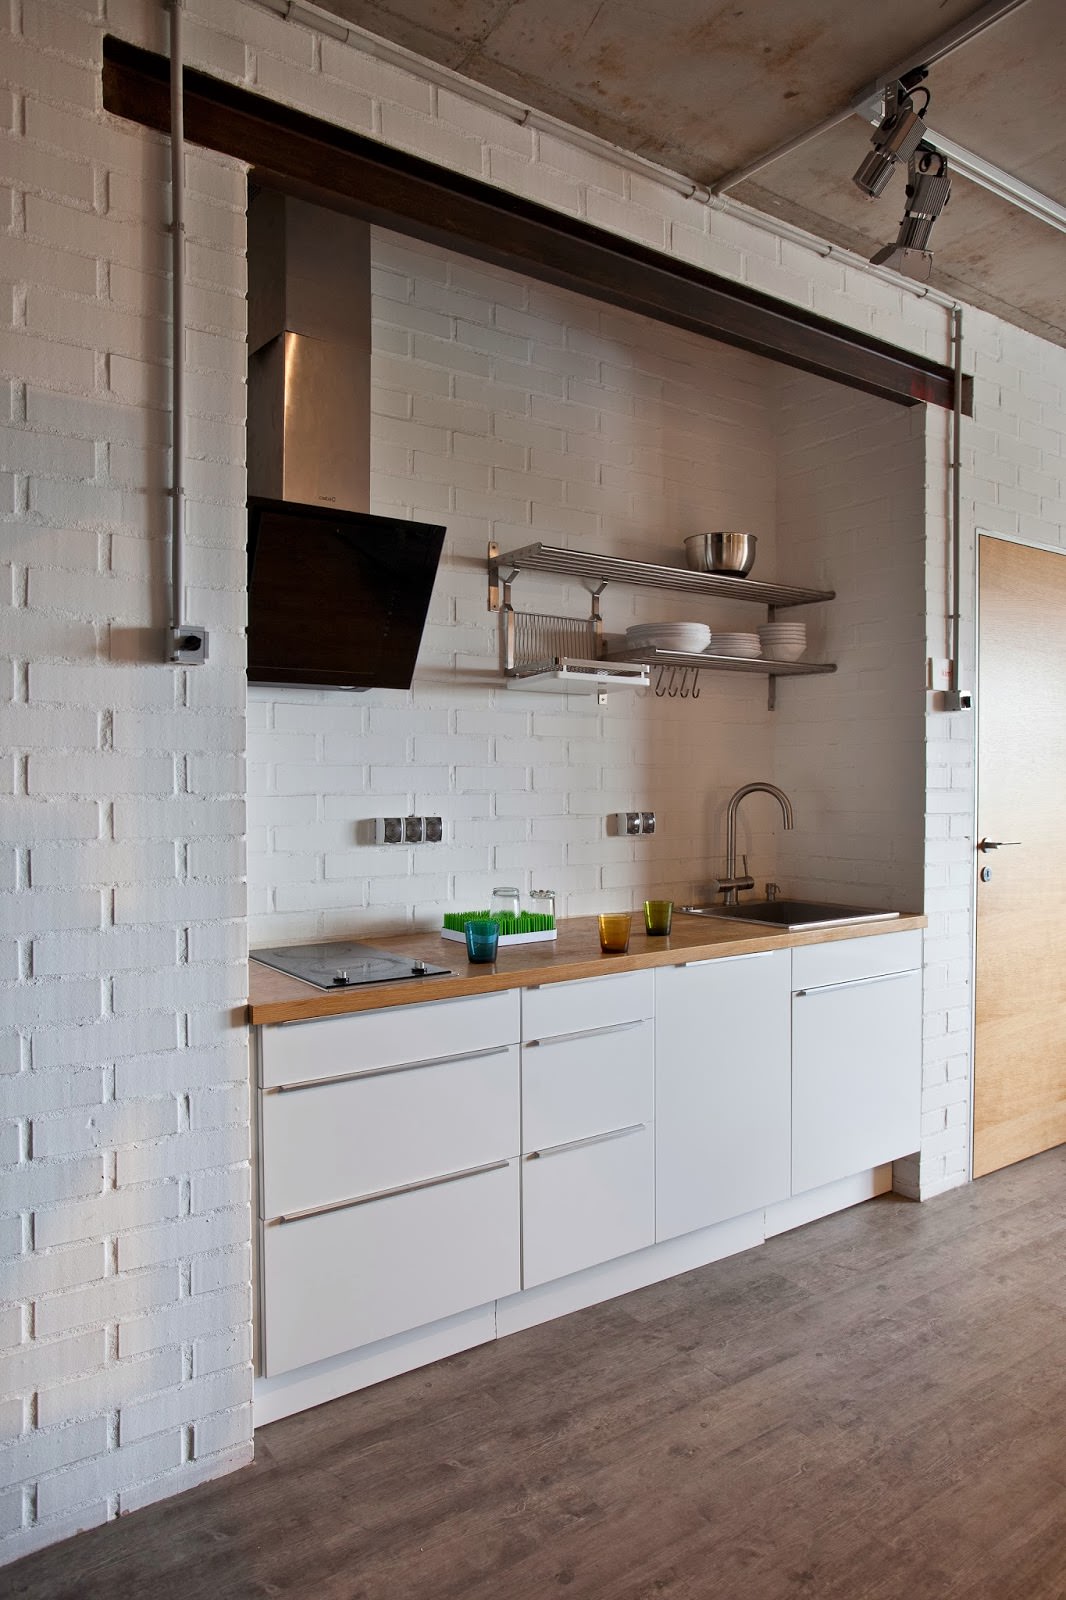 kuchyně s bílými cihlovými zdmi v interiéru kreativního bytu